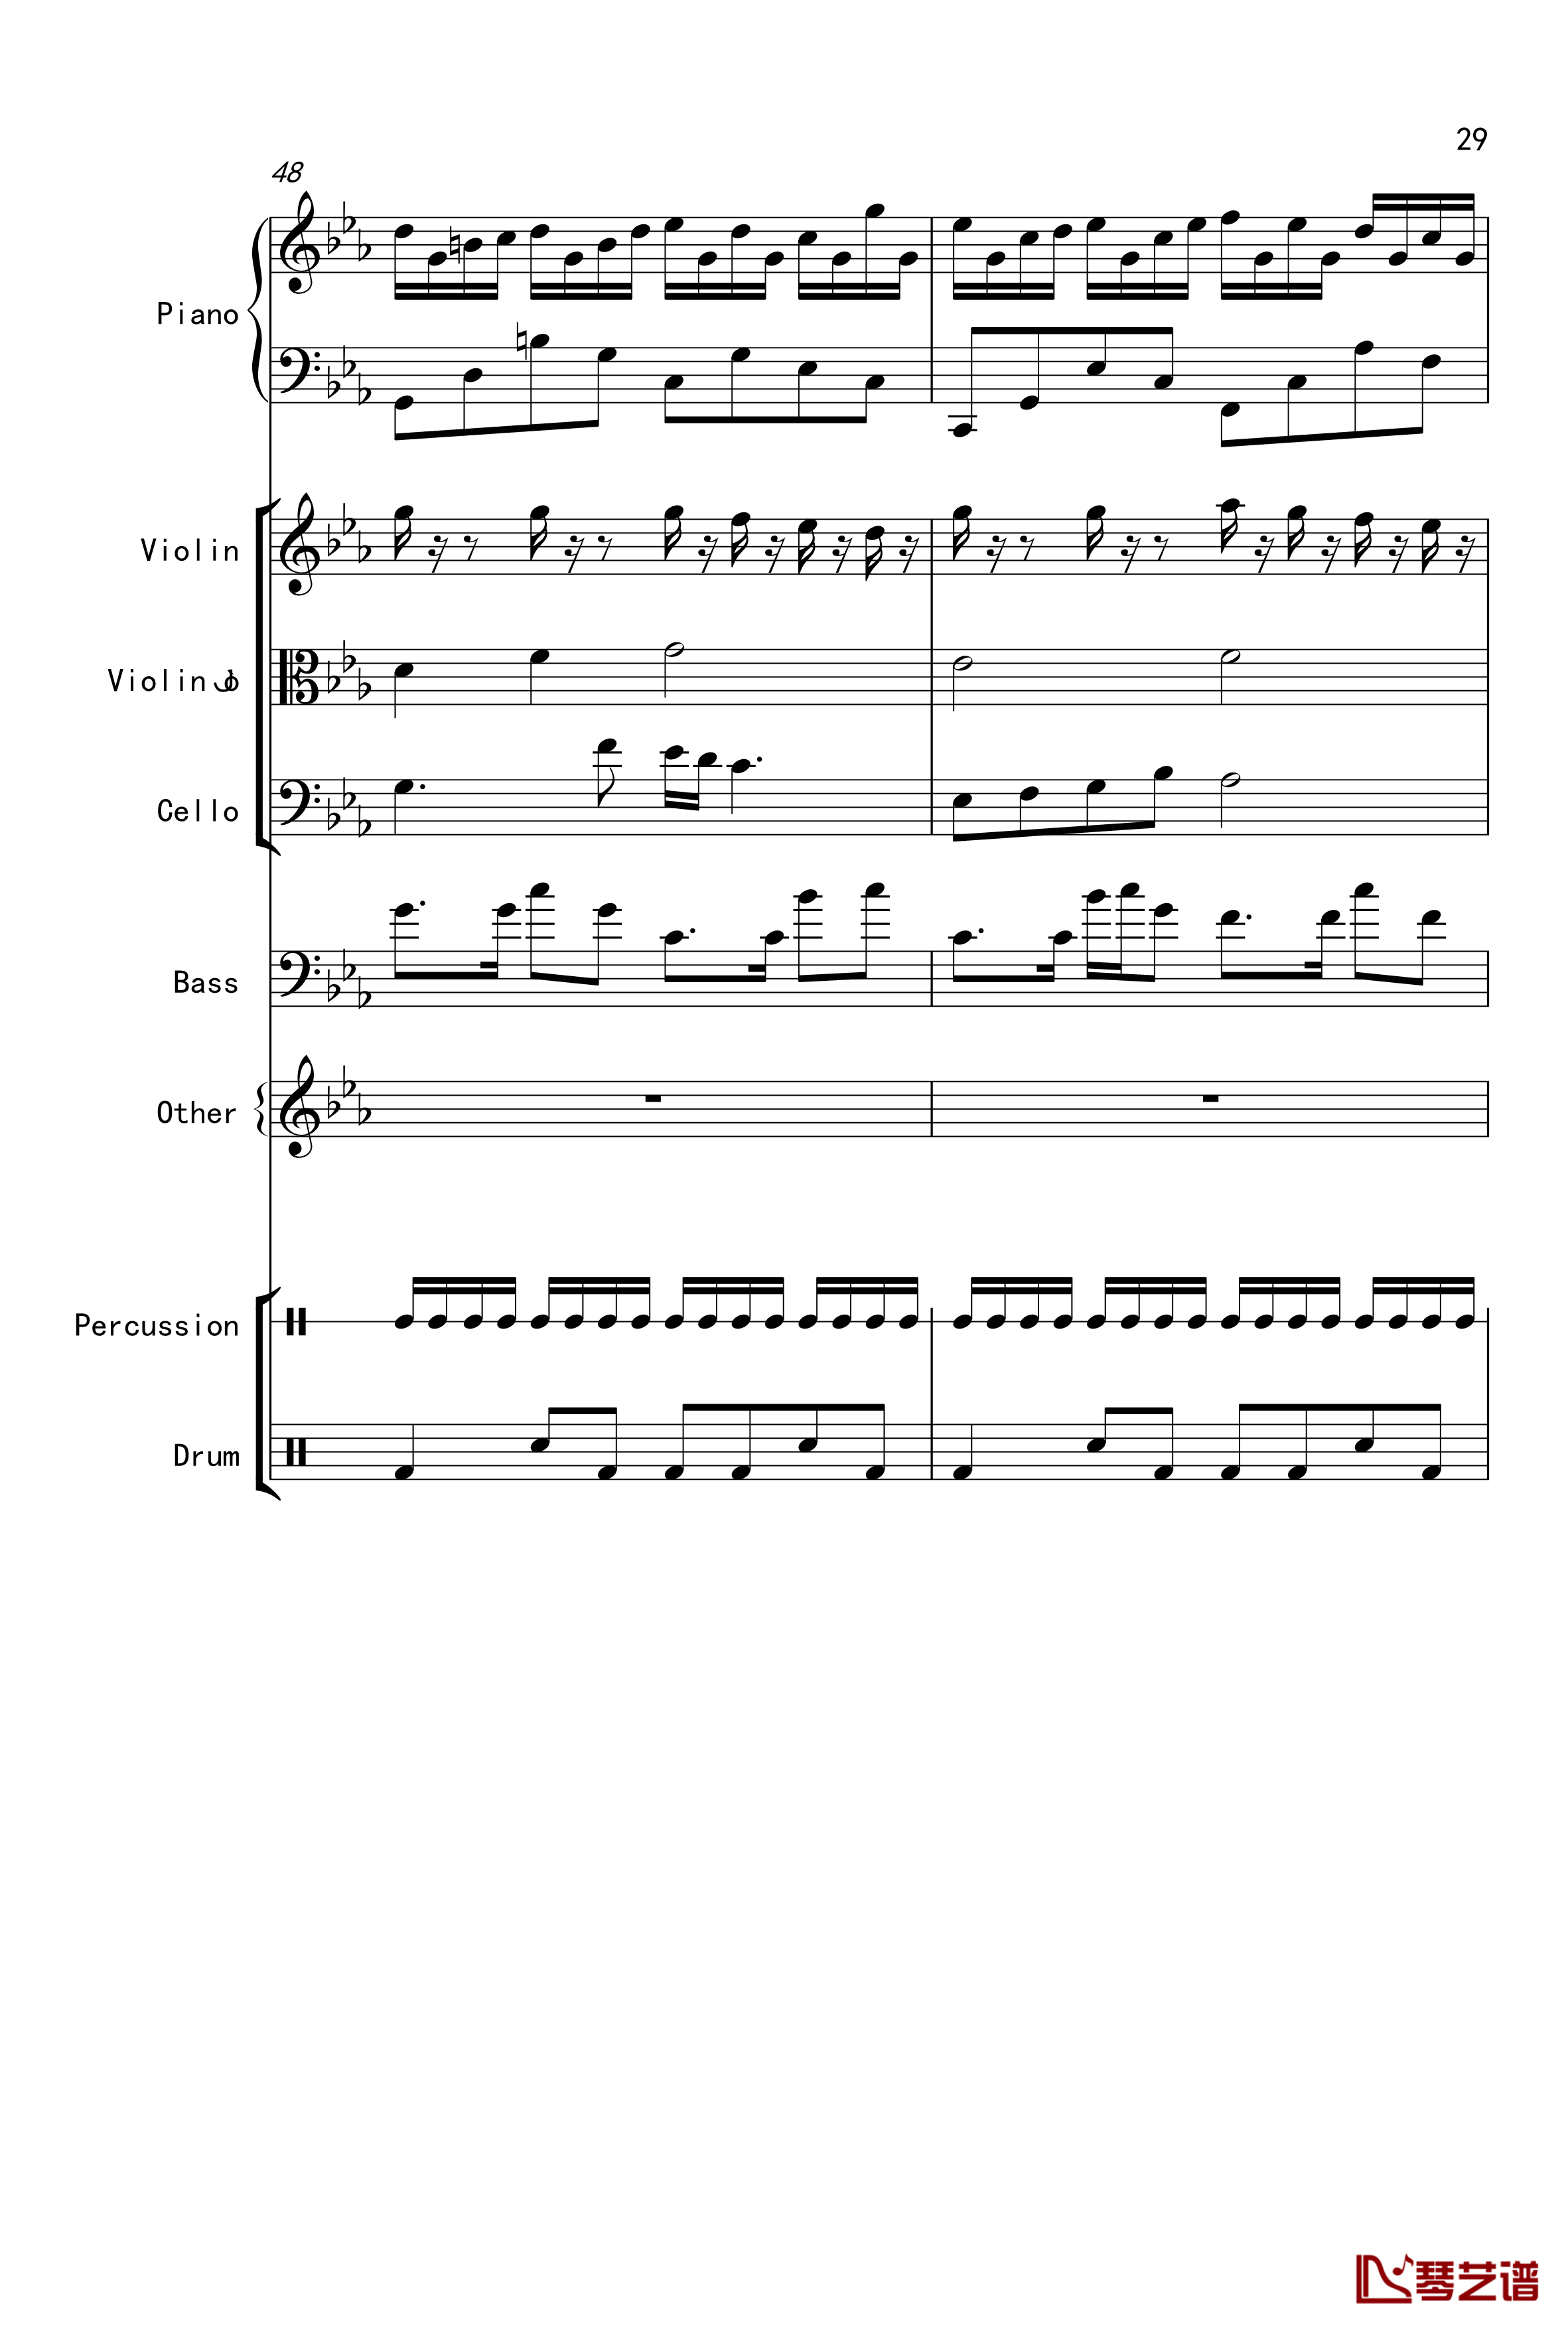 克罗地亚舞曲钢琴谱-Croatian Rhapsody-马克西姆-Maksim·Mrvica29